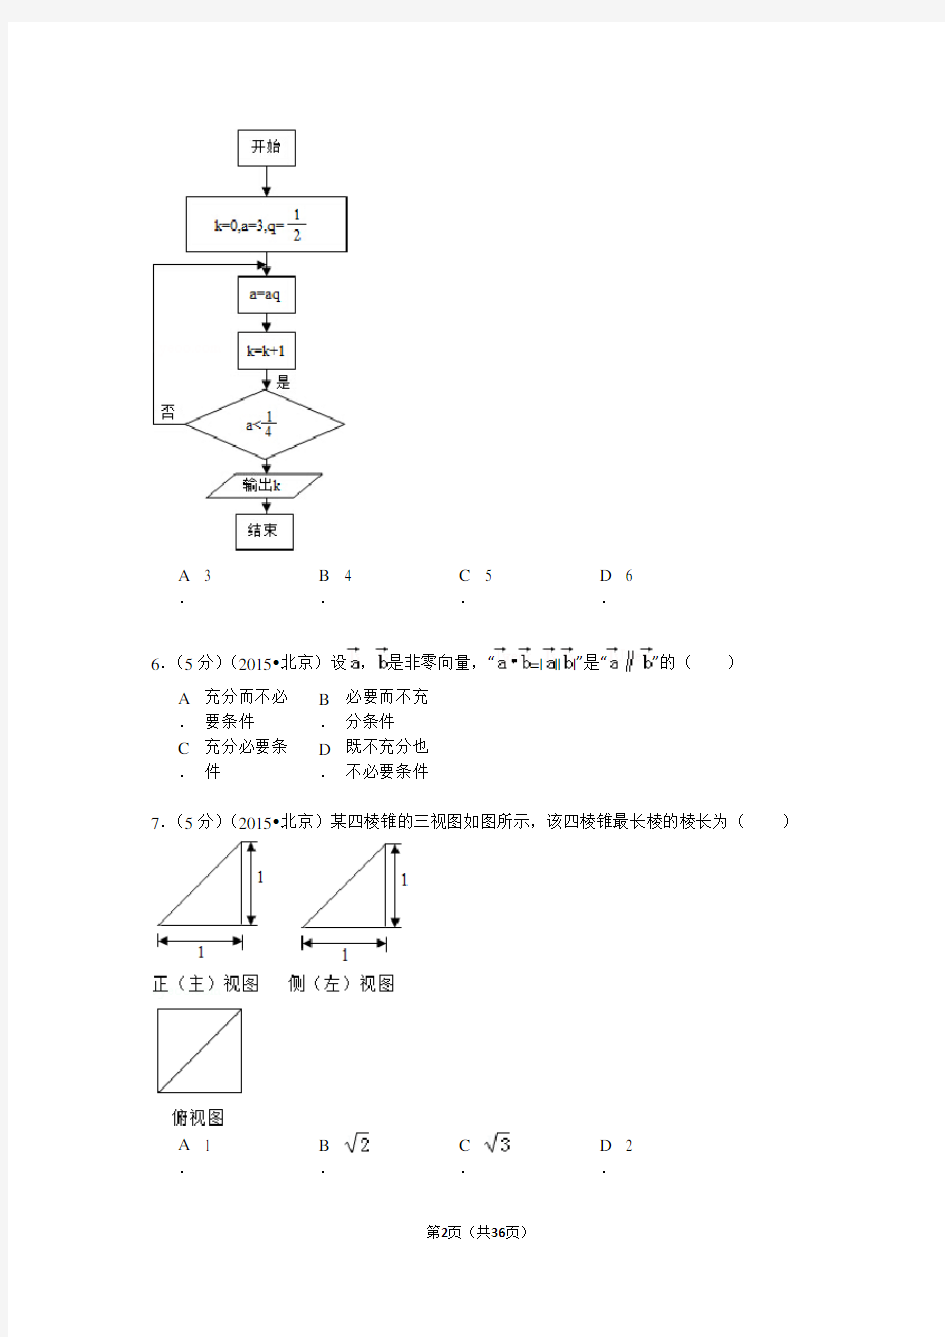 2015年北京高考文科数学试题及答案